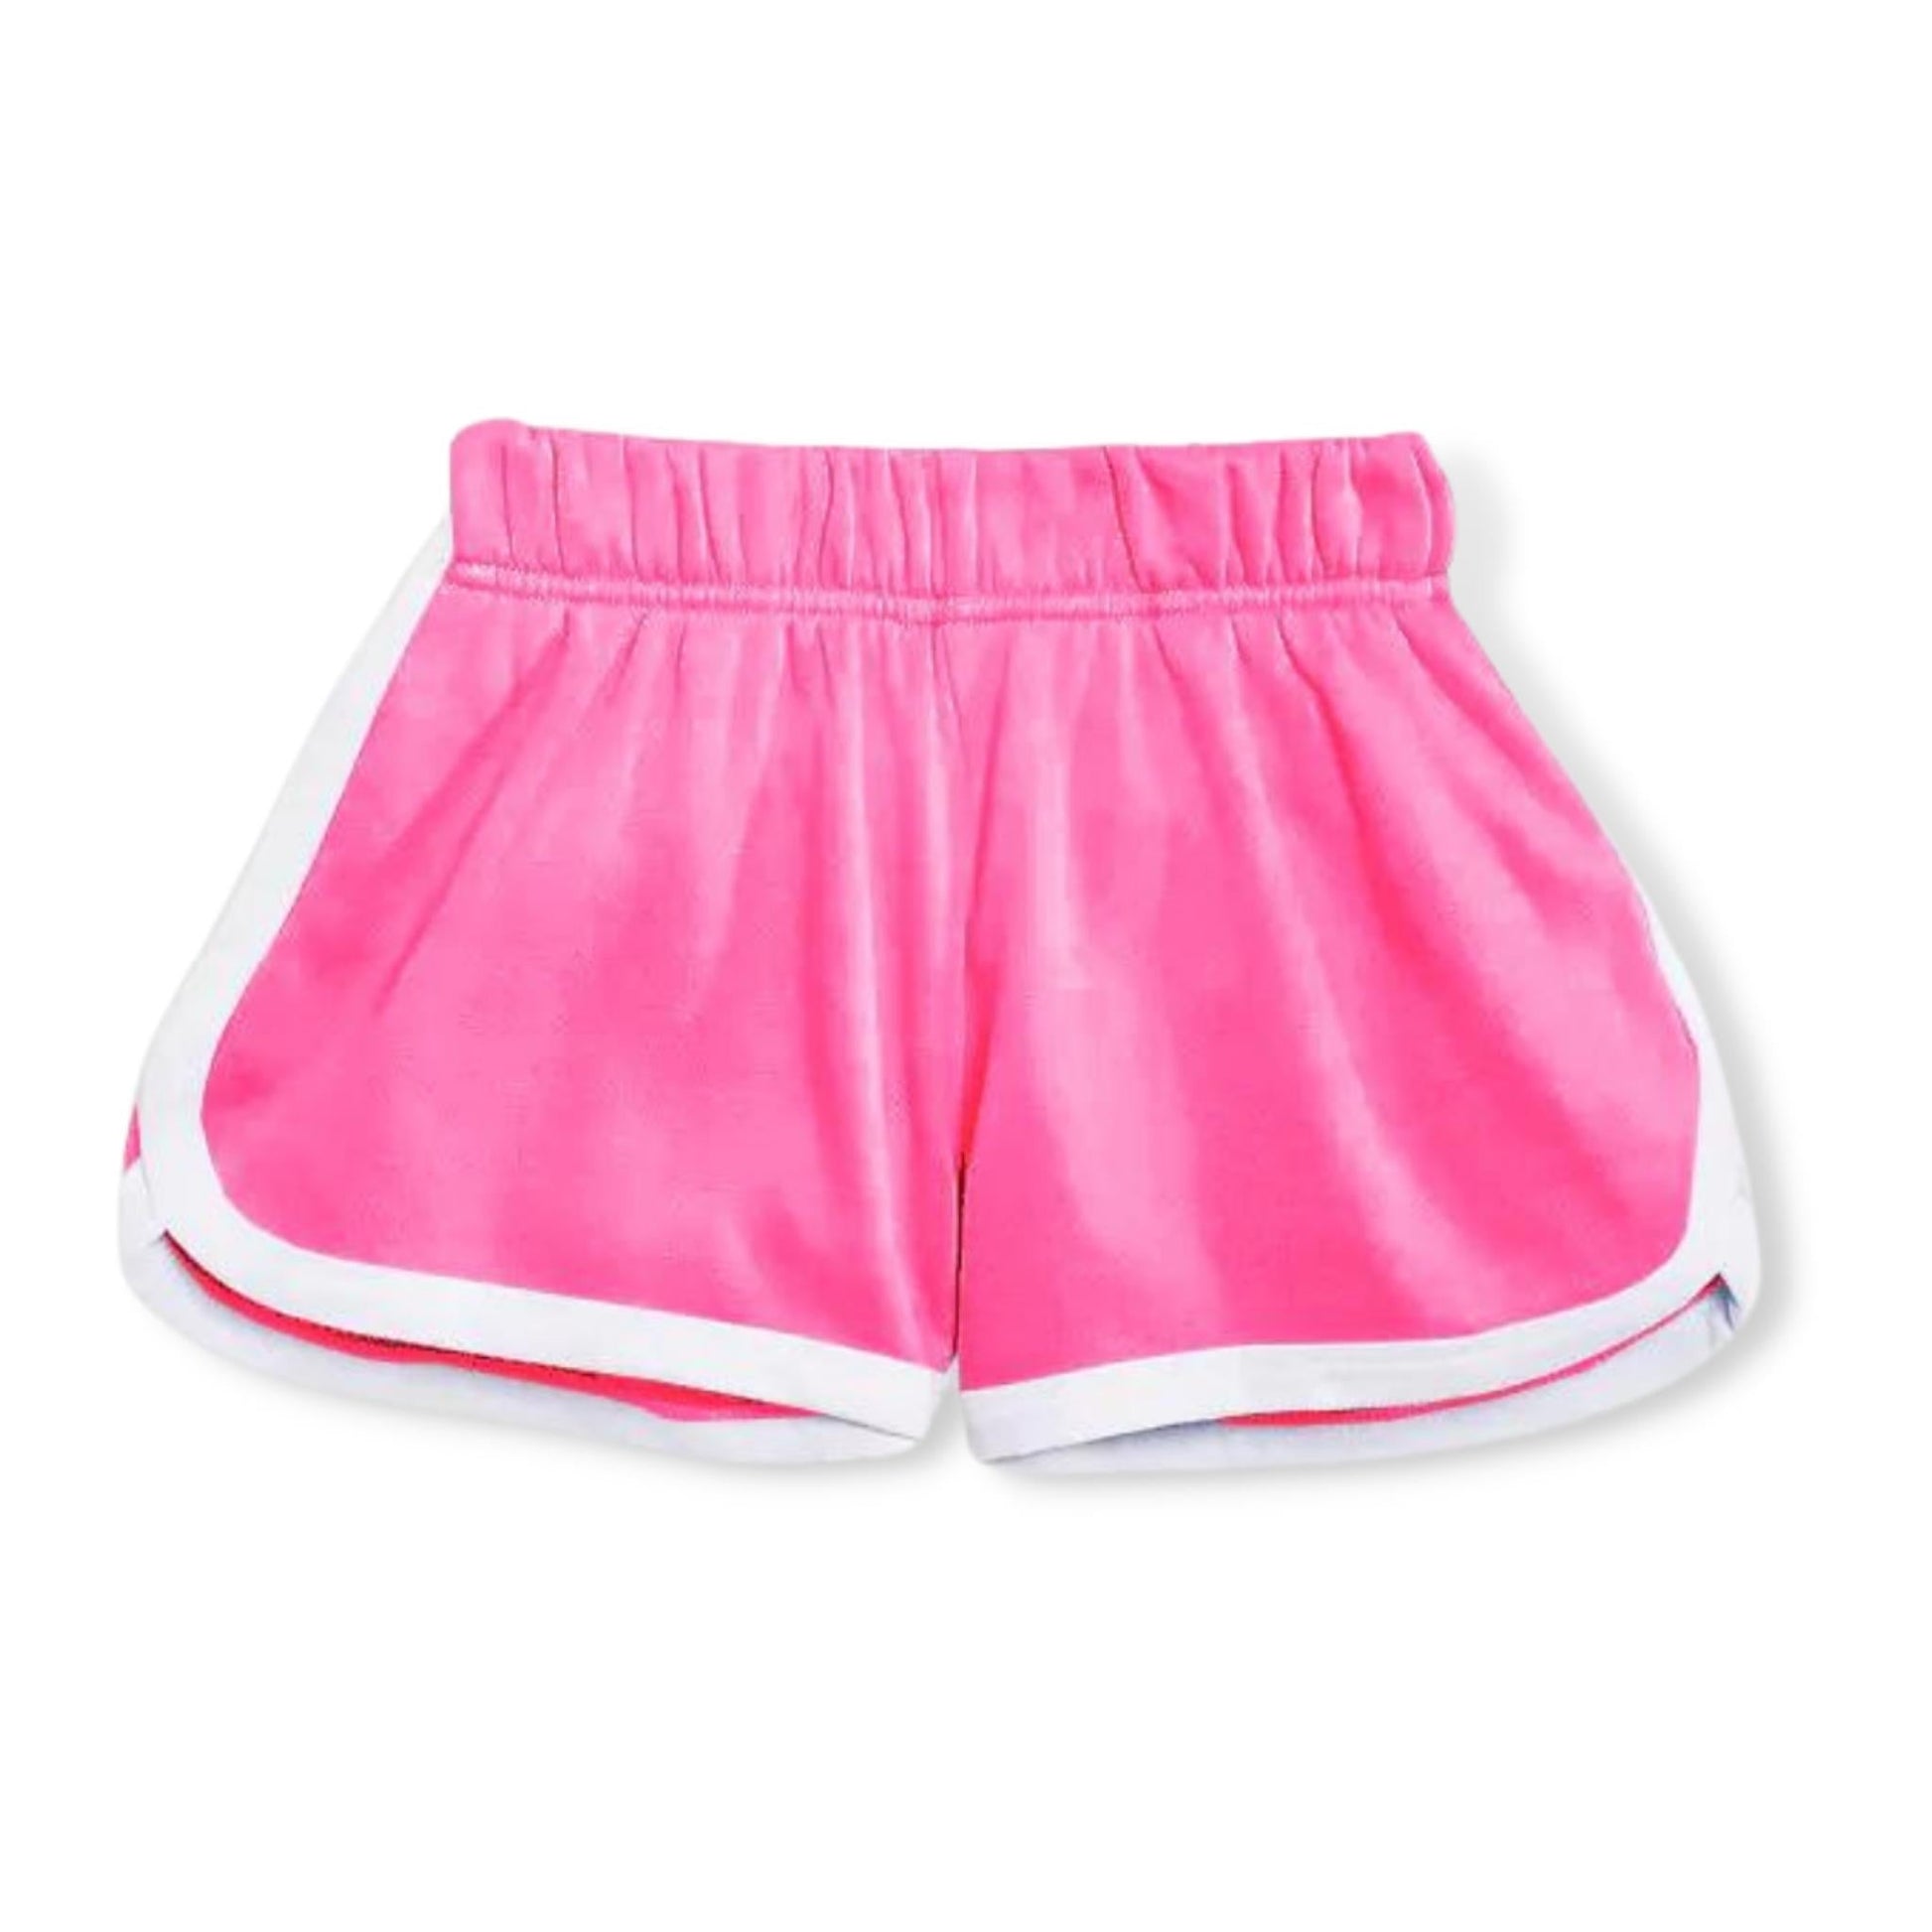 KatieJNYC Hot Pink Kimmie Shorts - a Spirit Animal - shorts $30-$60 active Jun 2022 bottoms